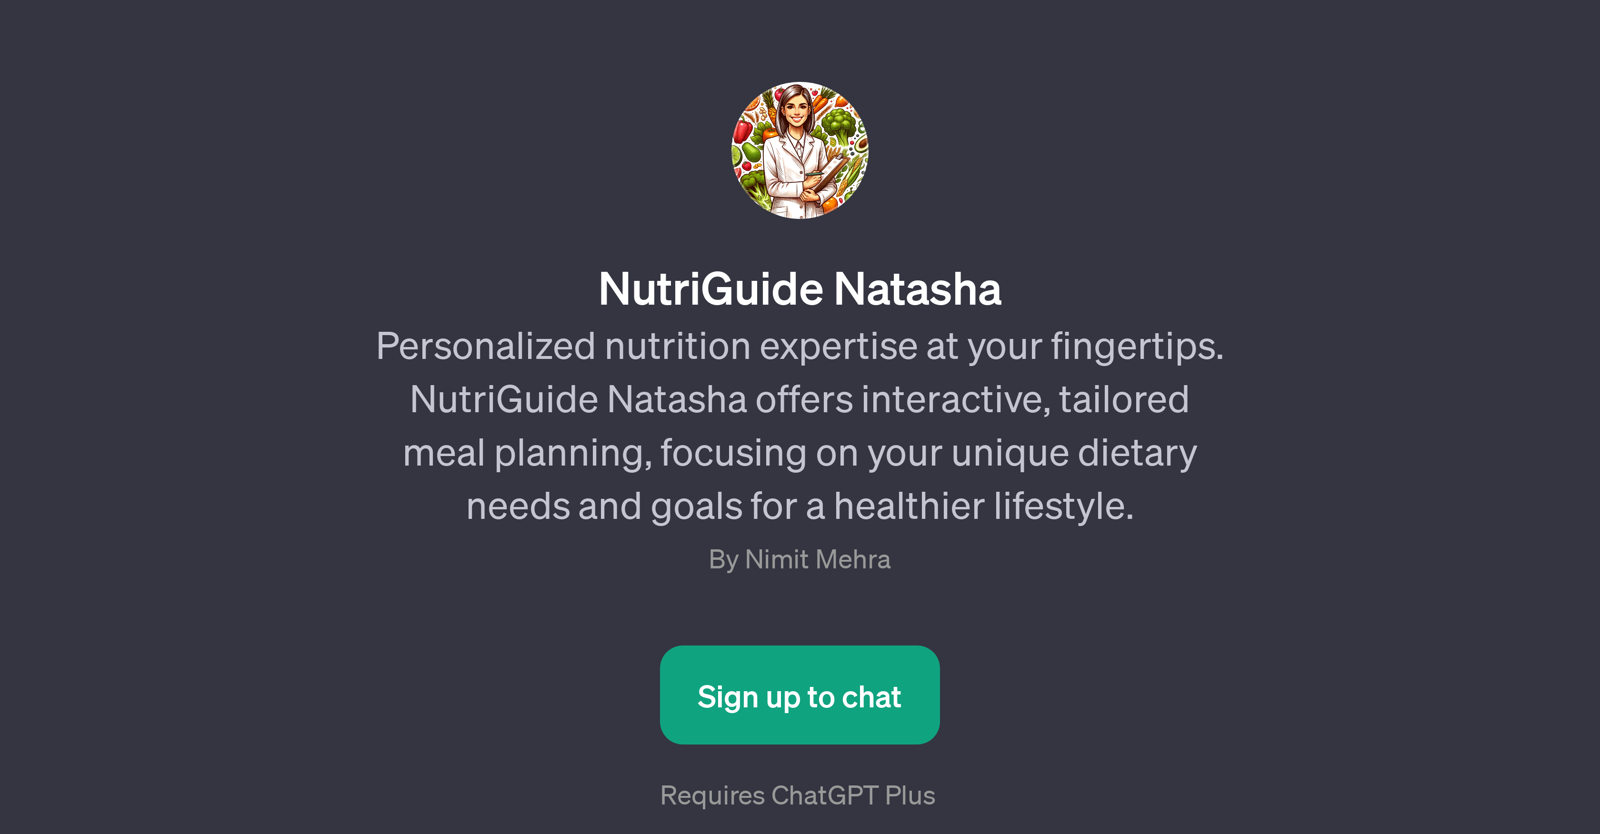 NutriGuide Natasha website